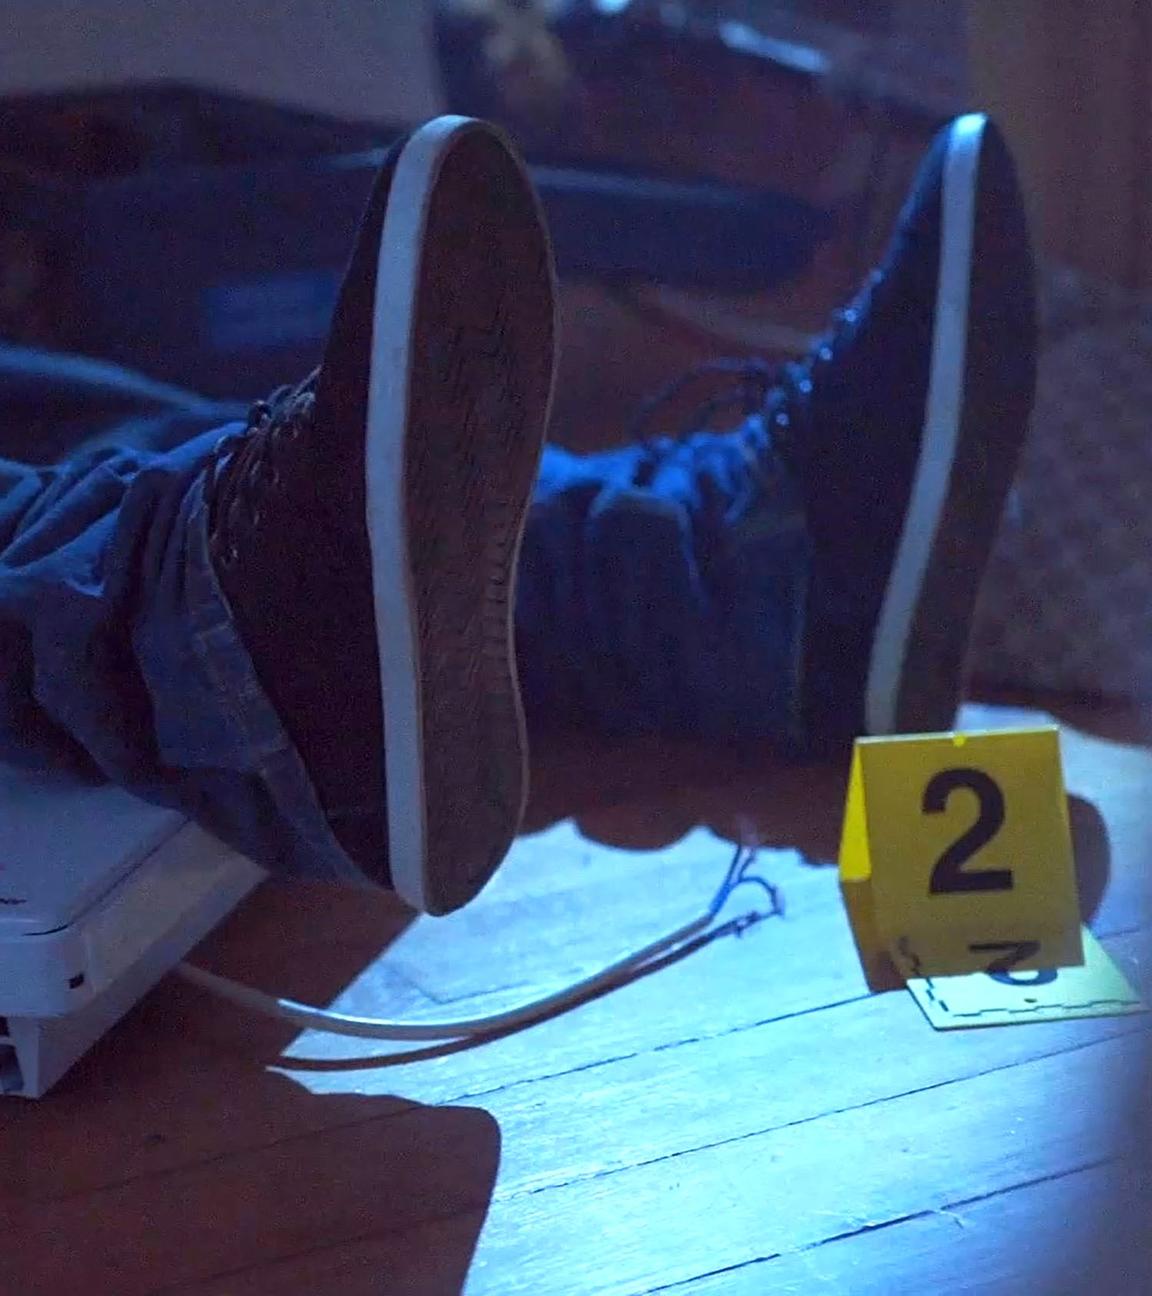 Zwei Beine eines Mannes liegen auf dem Boden. An seiner linken Fußsohle steht ein kleines, gelbes Schild mit der Nummer 2.